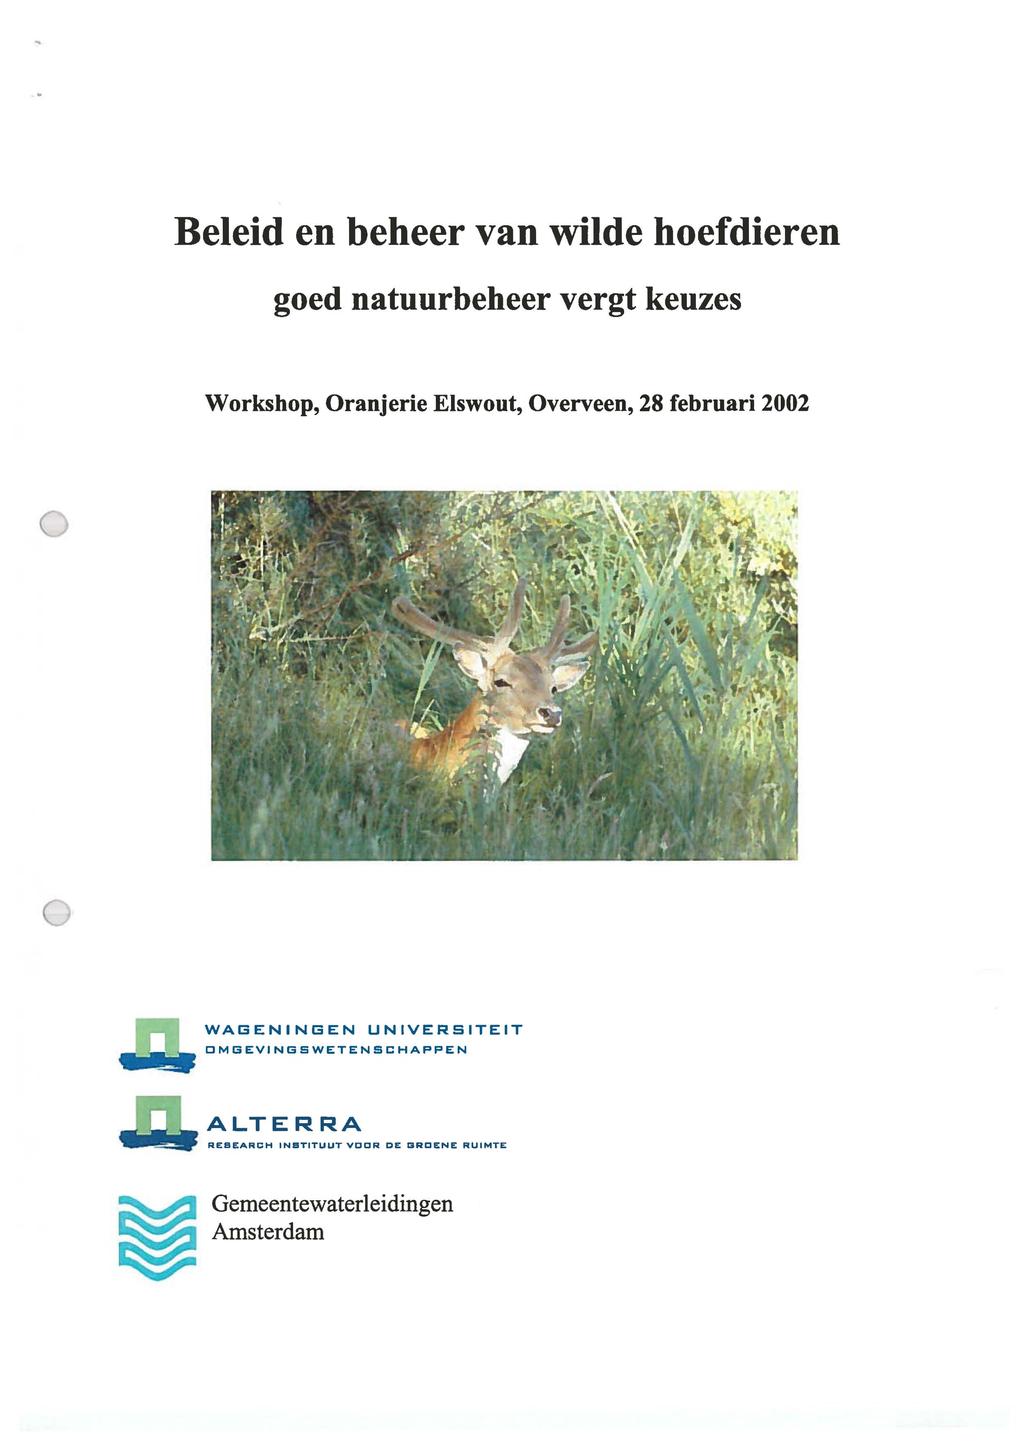 Beleid en beheer van wilde hoefdieren goed natuurbeheer vergt keuzes Workshop, Oranjerie Elswout, Overveen, 28